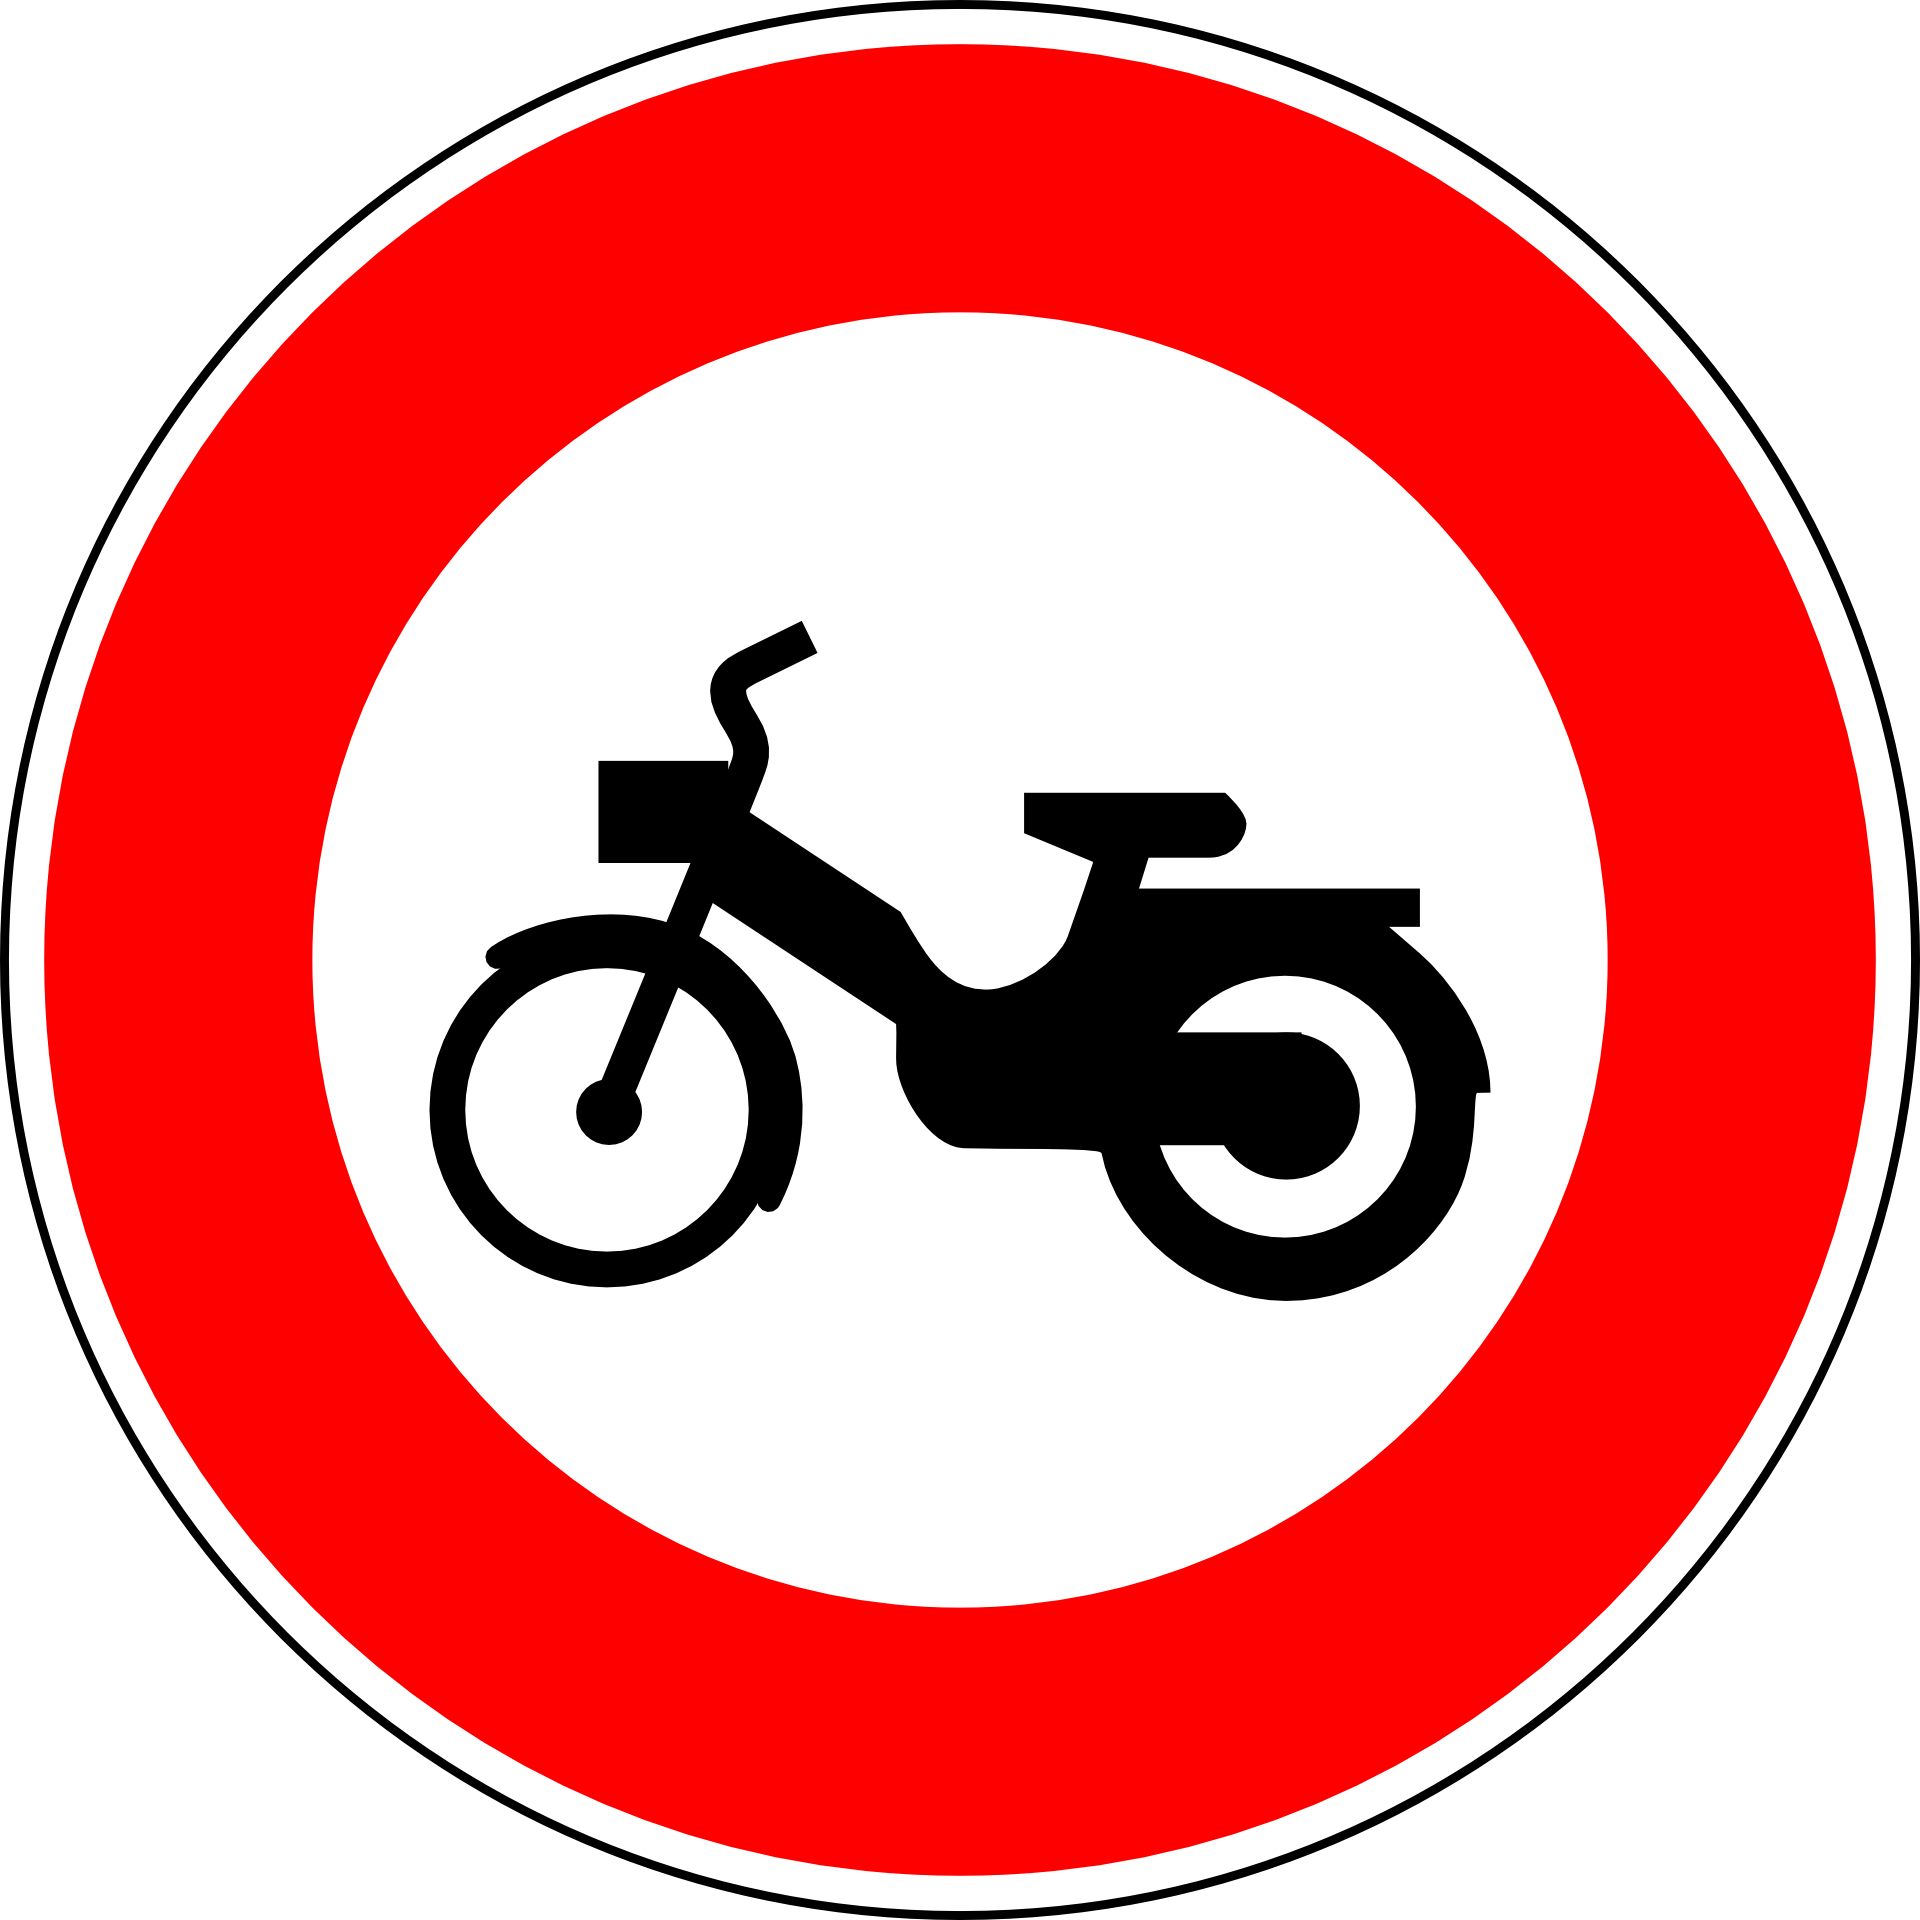 Передвижения запрещены. Дорожные знаки. Дорожный знак мотоцикл. Круглый знак. Дорожные знаки круглые.